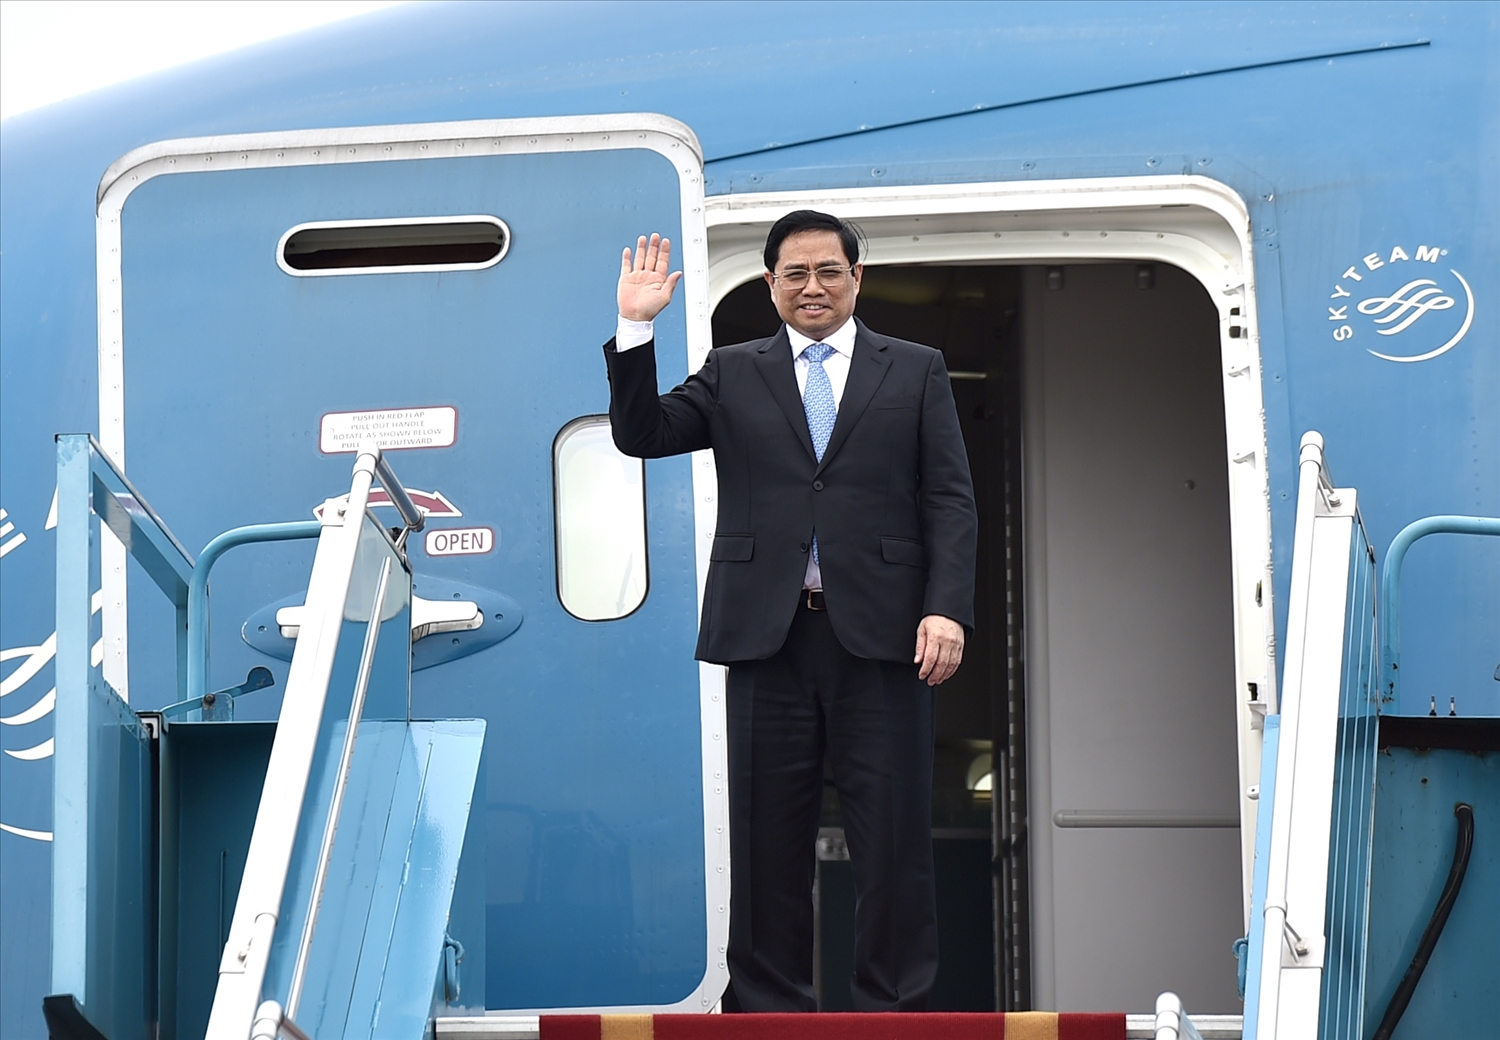 Thủ tướng Chính phủ Phạm Minh Chính và đoàn đại biểu cấp cao Việt Nam rời Hà Nội, lên đường thăm chính thức Nhật Bản theo lời mời của Thủ tướng Nhật Bản Kishida Fumio. Ảnh: VGP/Nhật Bắc